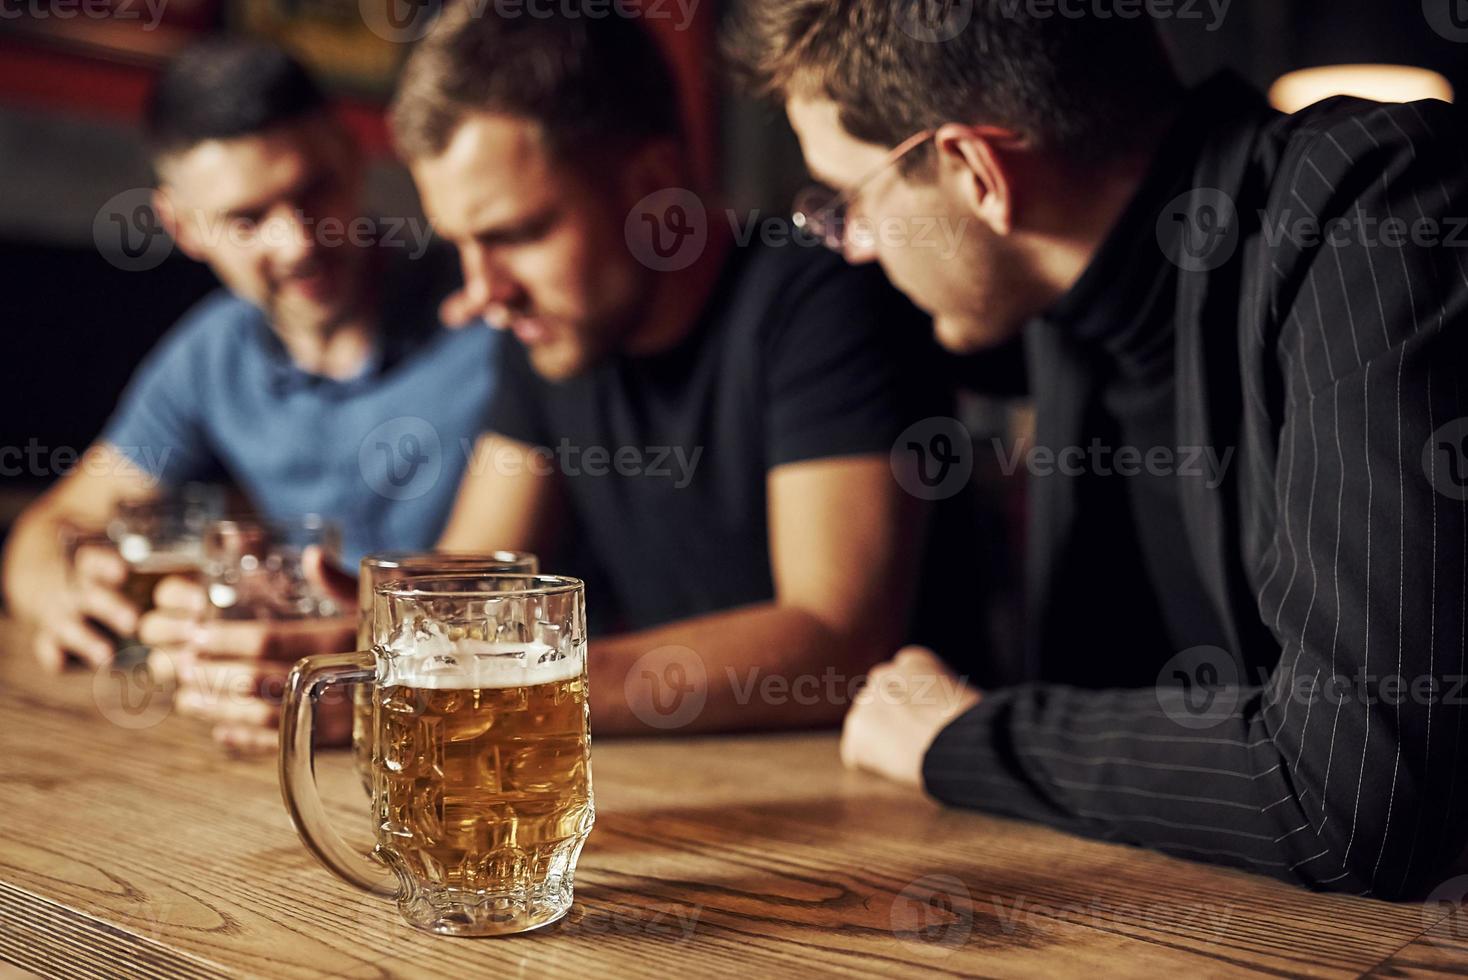 três amigos do sexo masculino no bar. apoiando amigo triste. unidade das pessoas. com cerveja na mesa foto